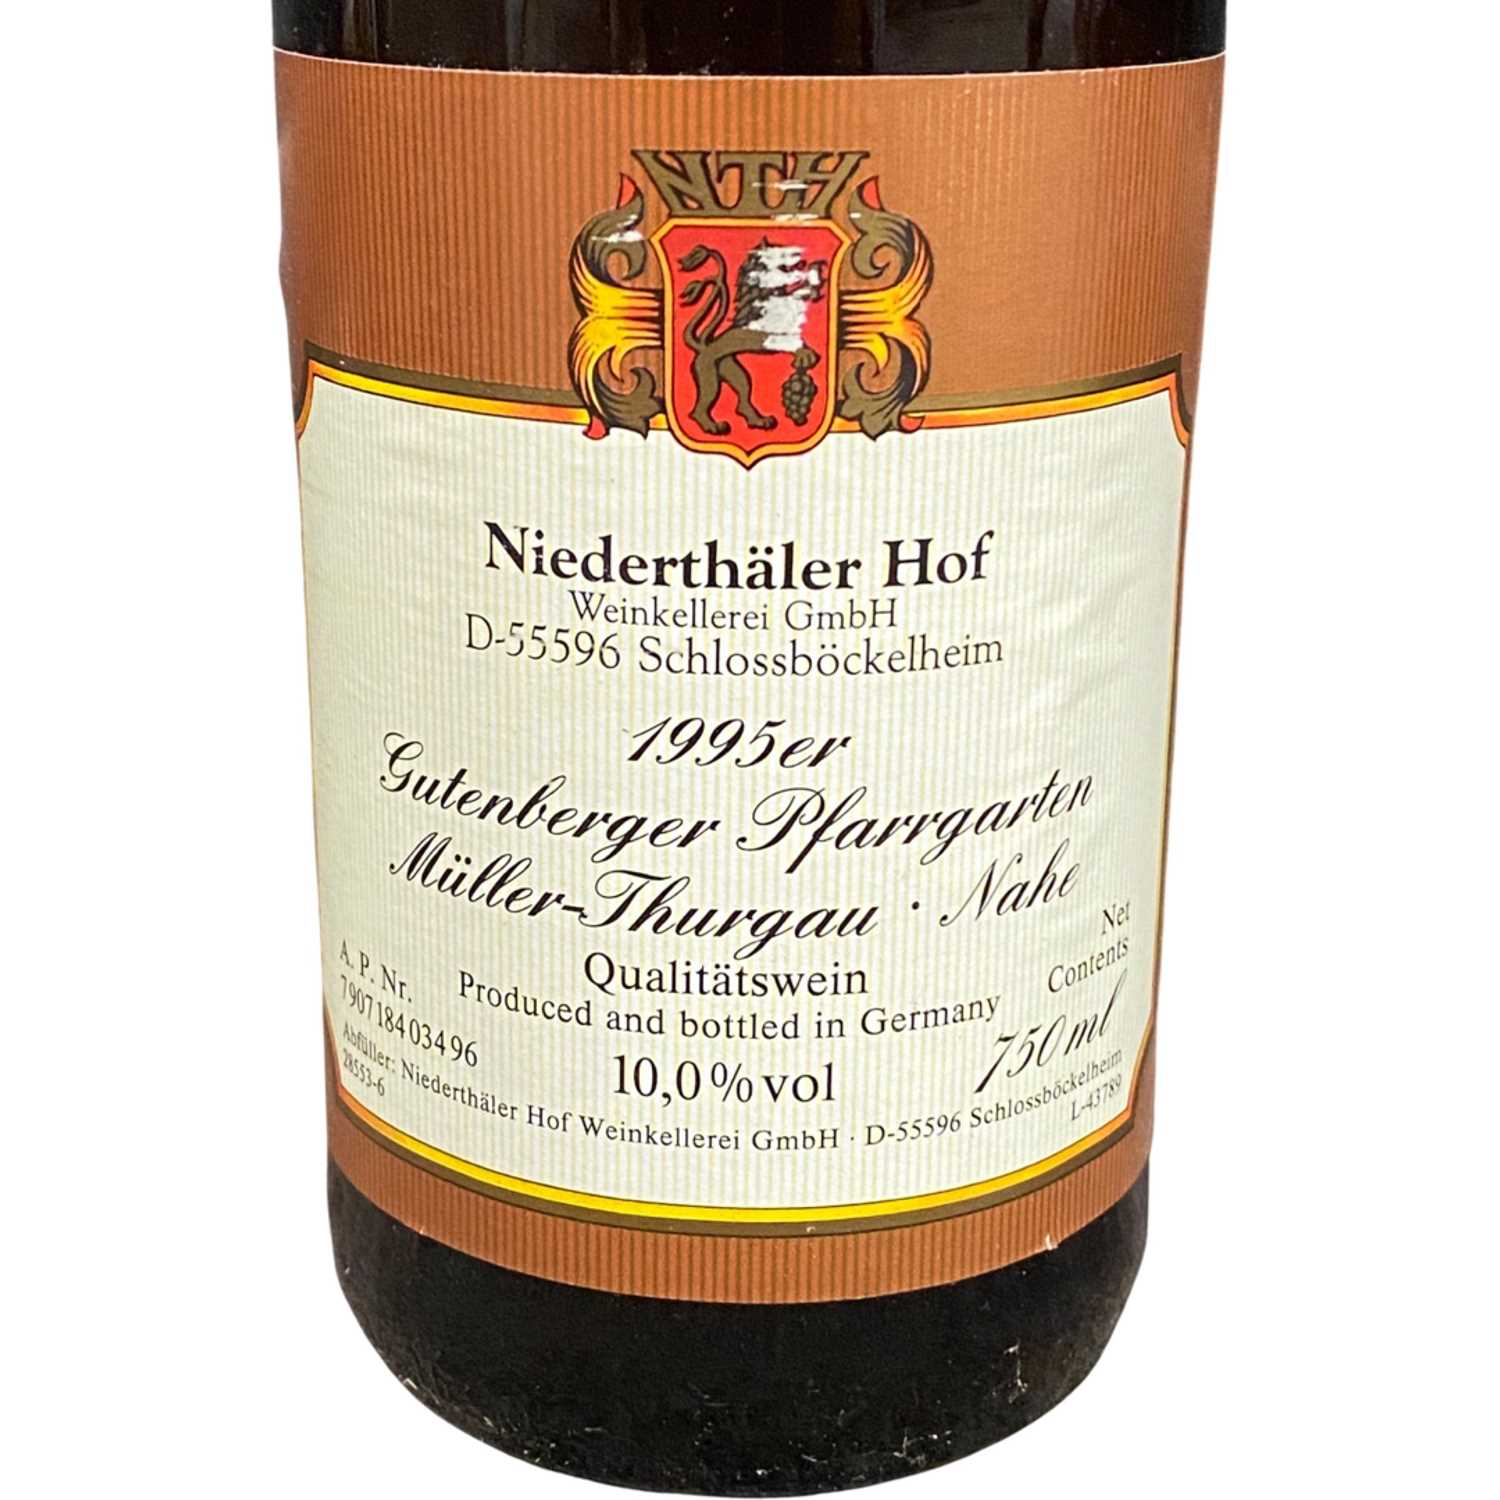 Six bottles of 1995 Neiderthäler Hof - Image 2 of 2